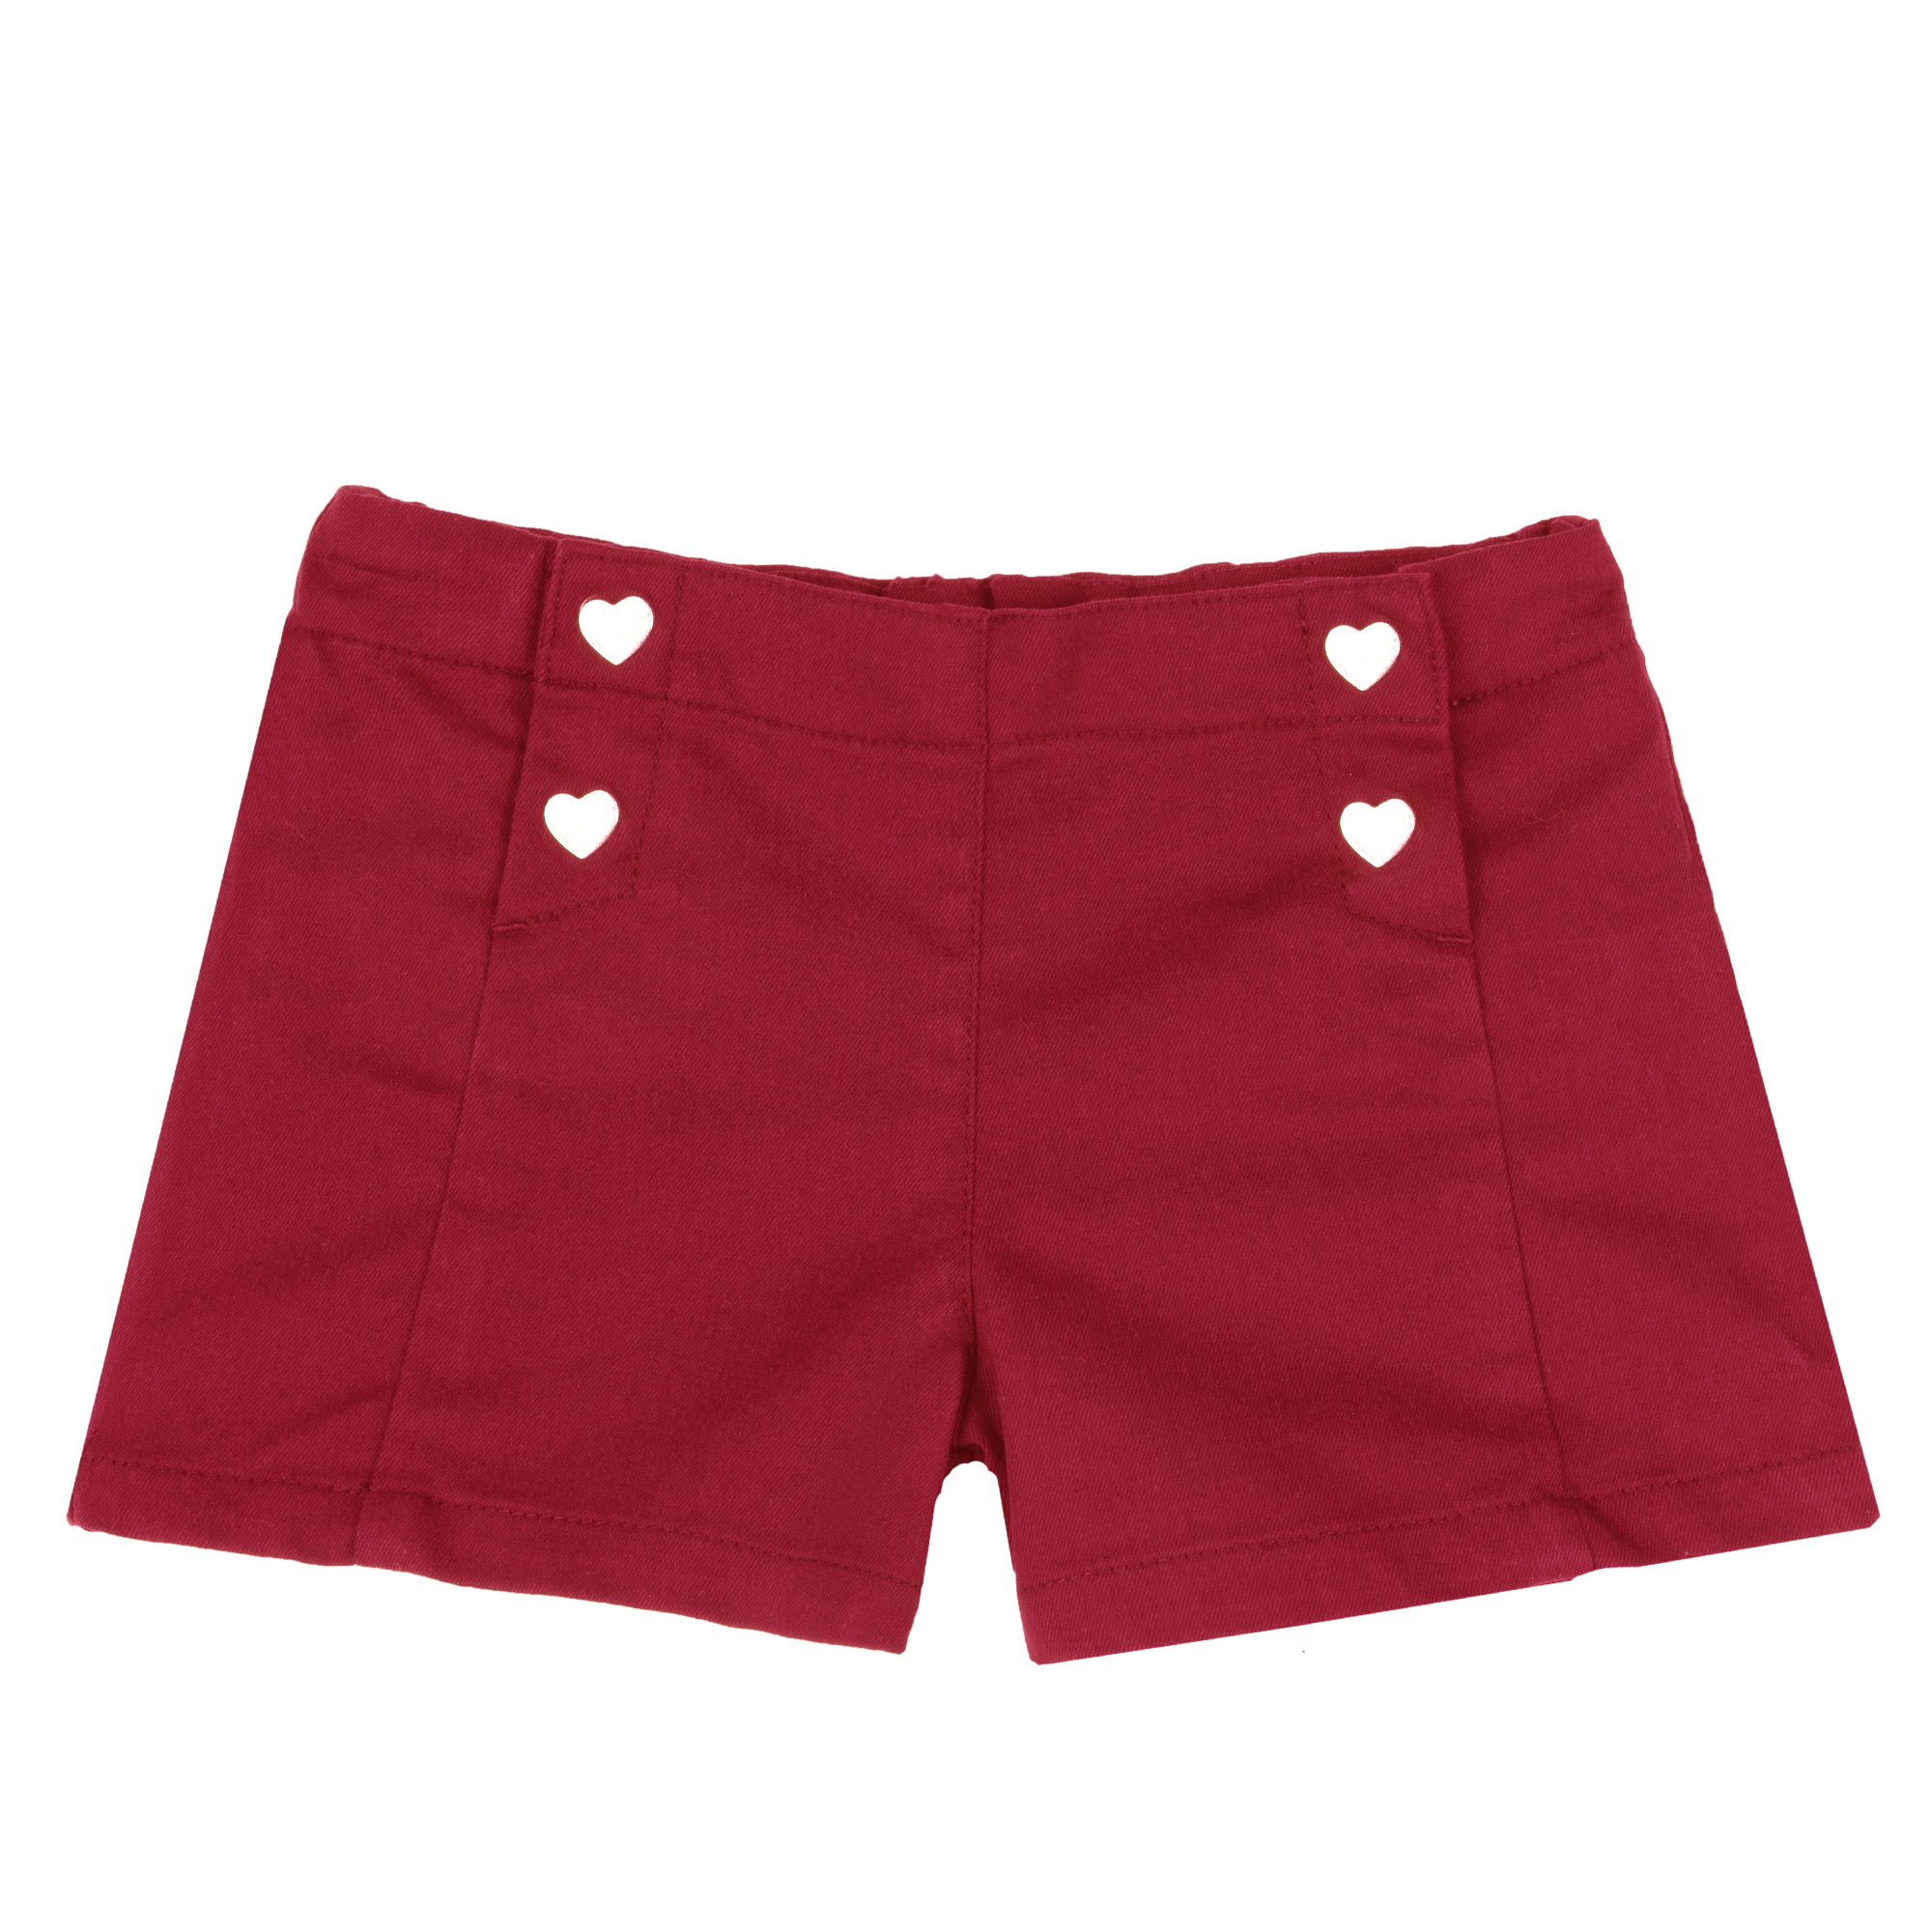 Pantaloni scurti copii Chicco, rosu, 52952-62MC CHICCO